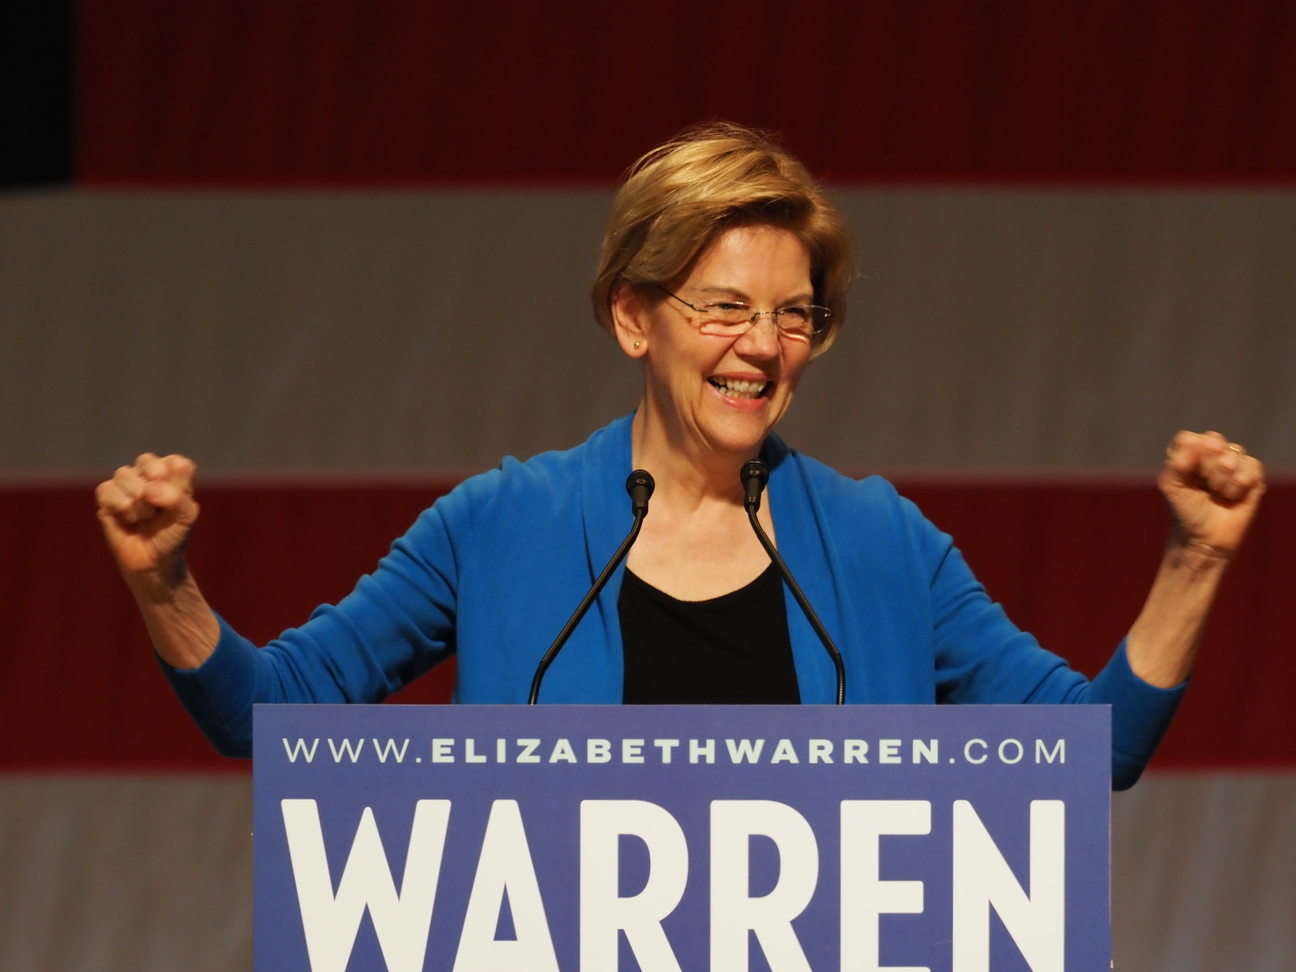 Elizabeth Warren greets supporters in Seattle